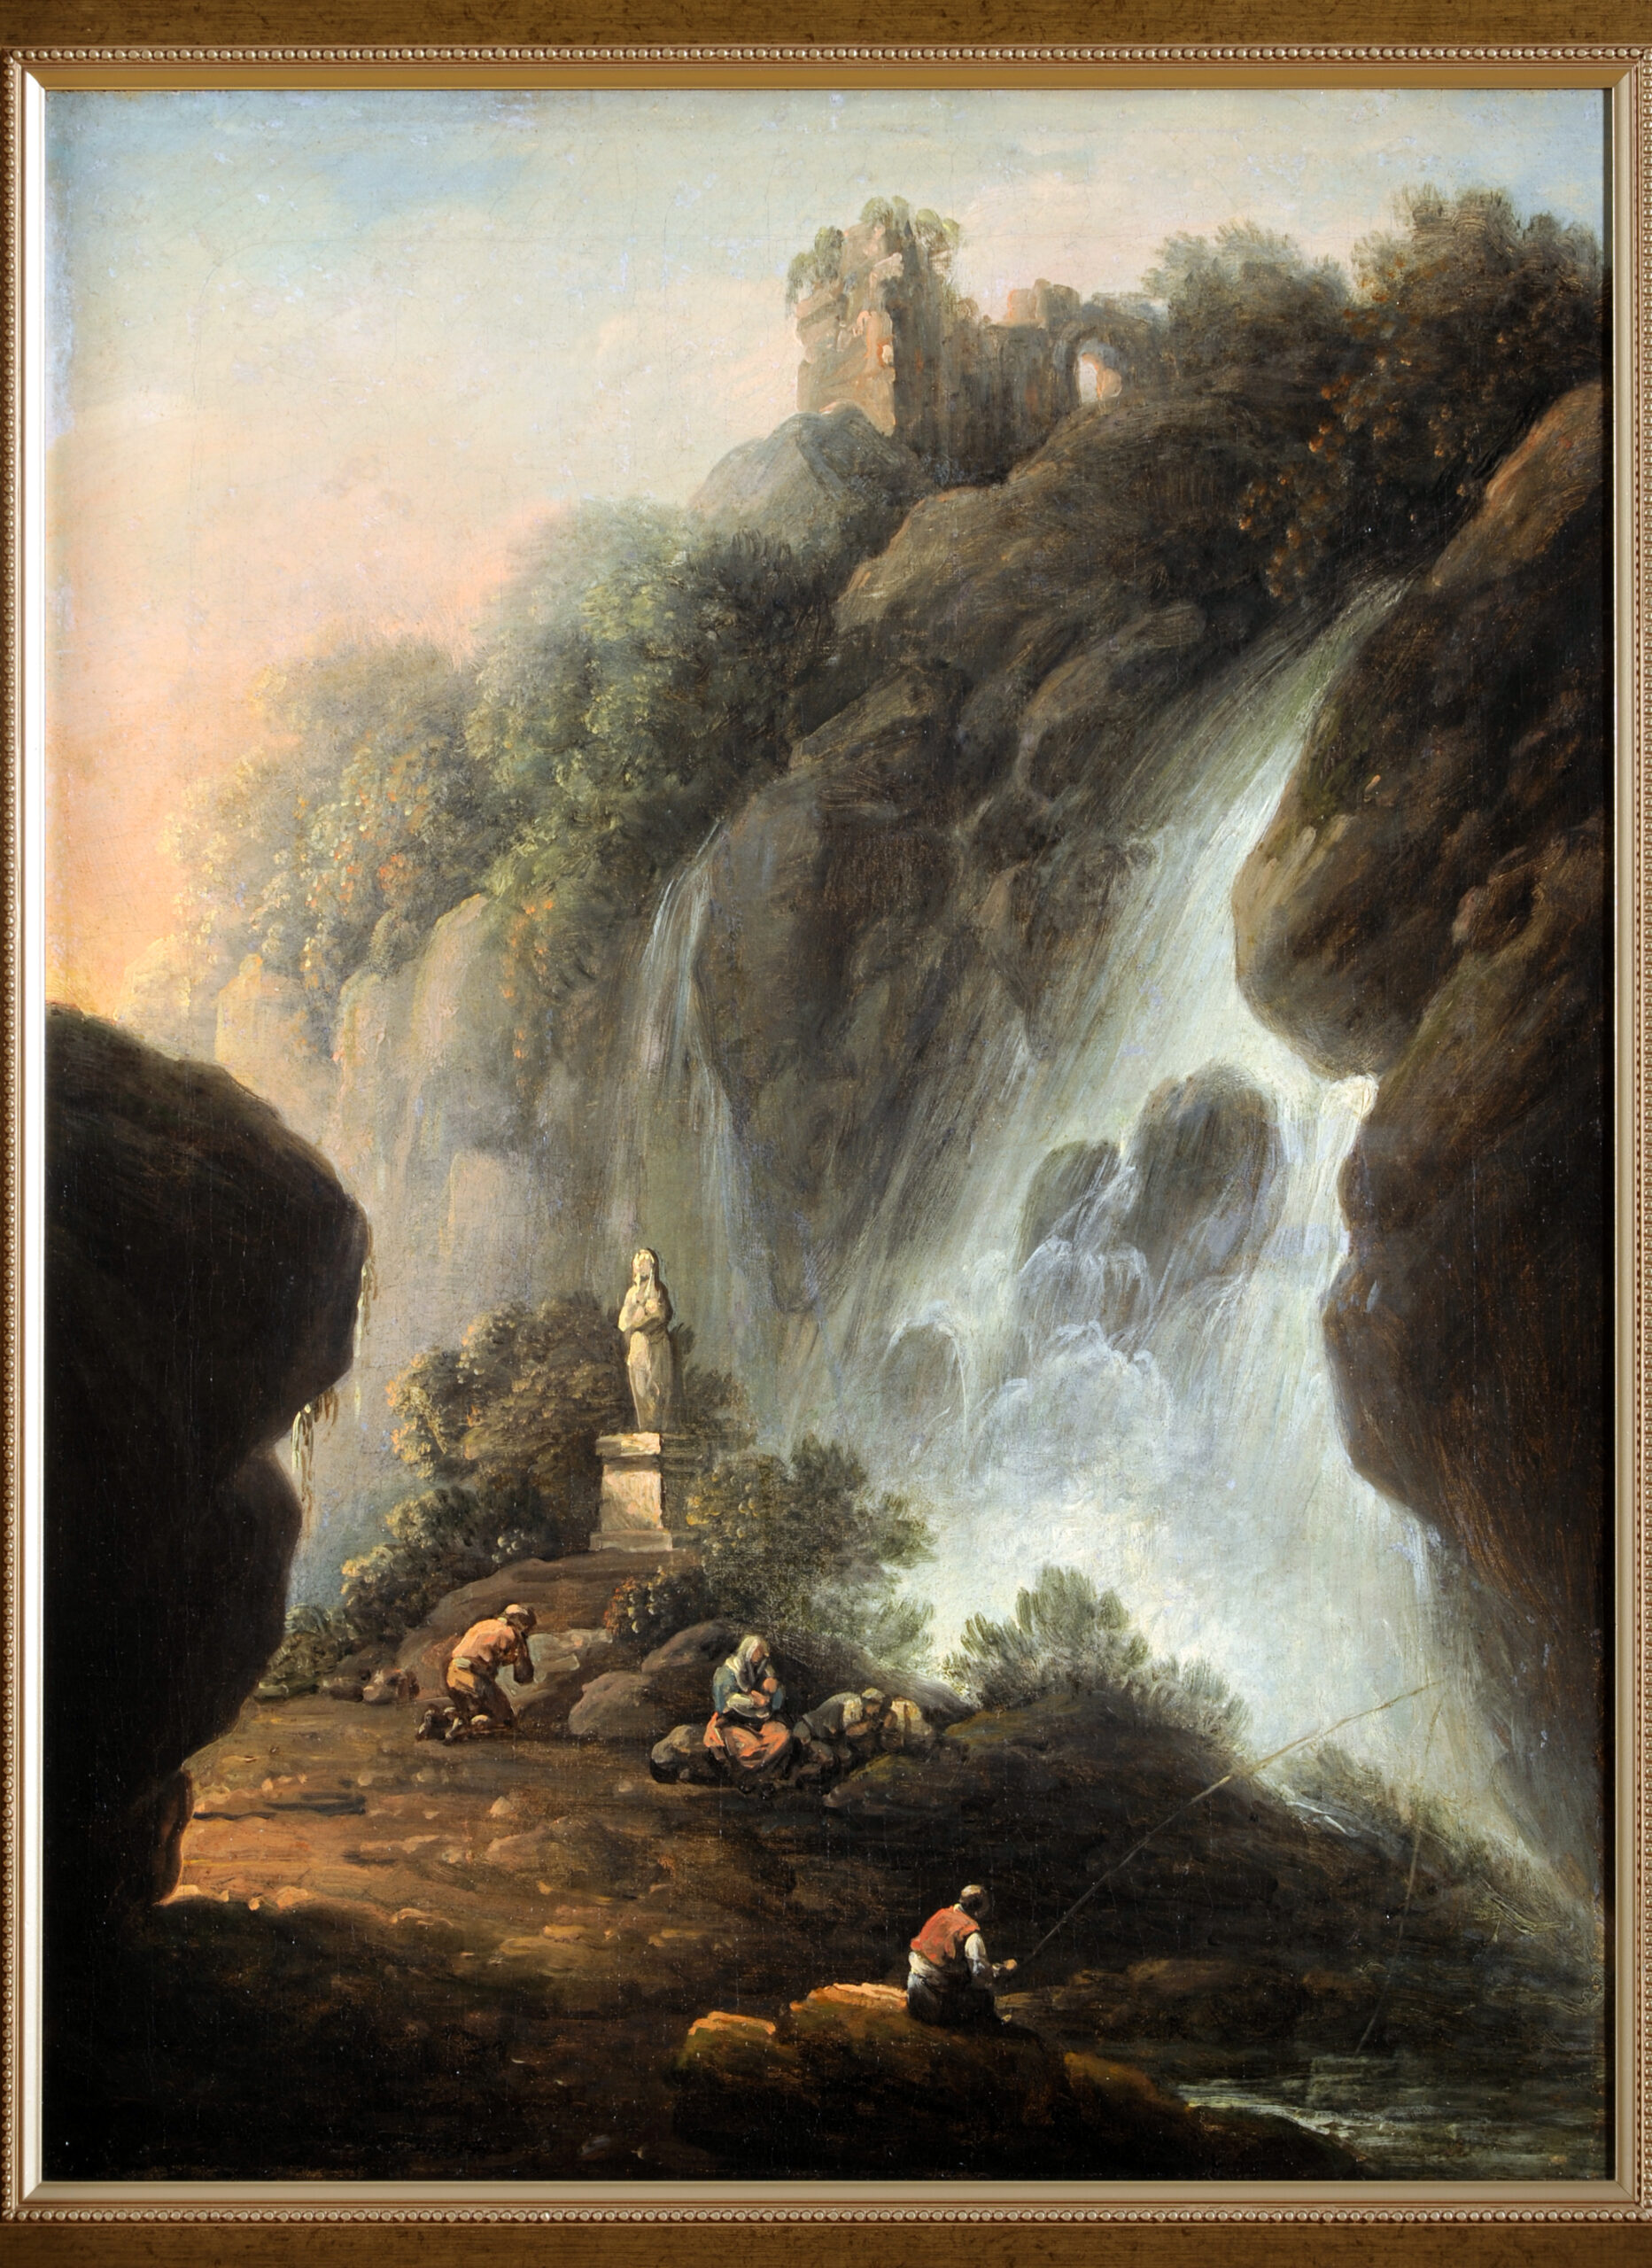 Skalisty krajobraz z wodospadem. Bliżej dolnej krawędzi obrazu kamienna figurka Maryi, poniżej czworo ludzi.